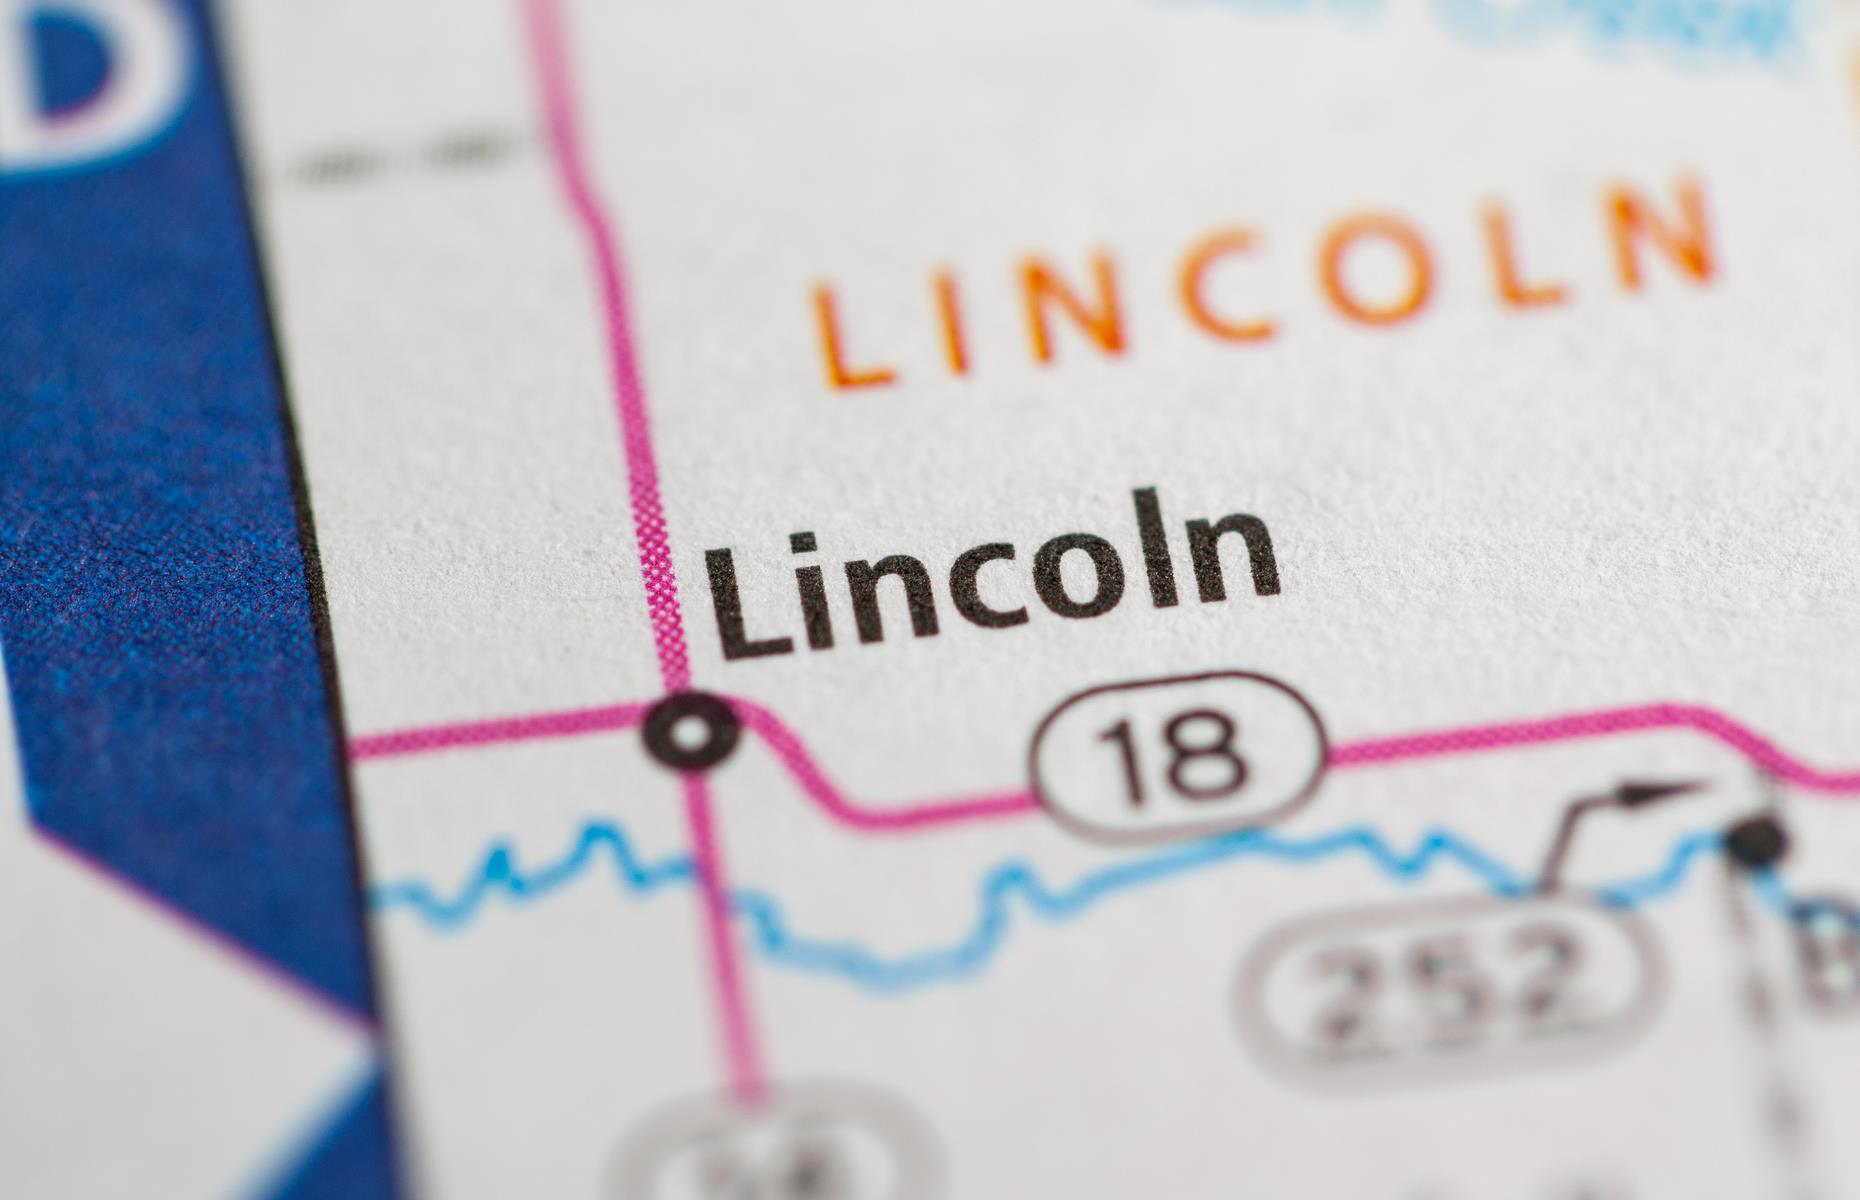 Lincoln, Kansas, USA